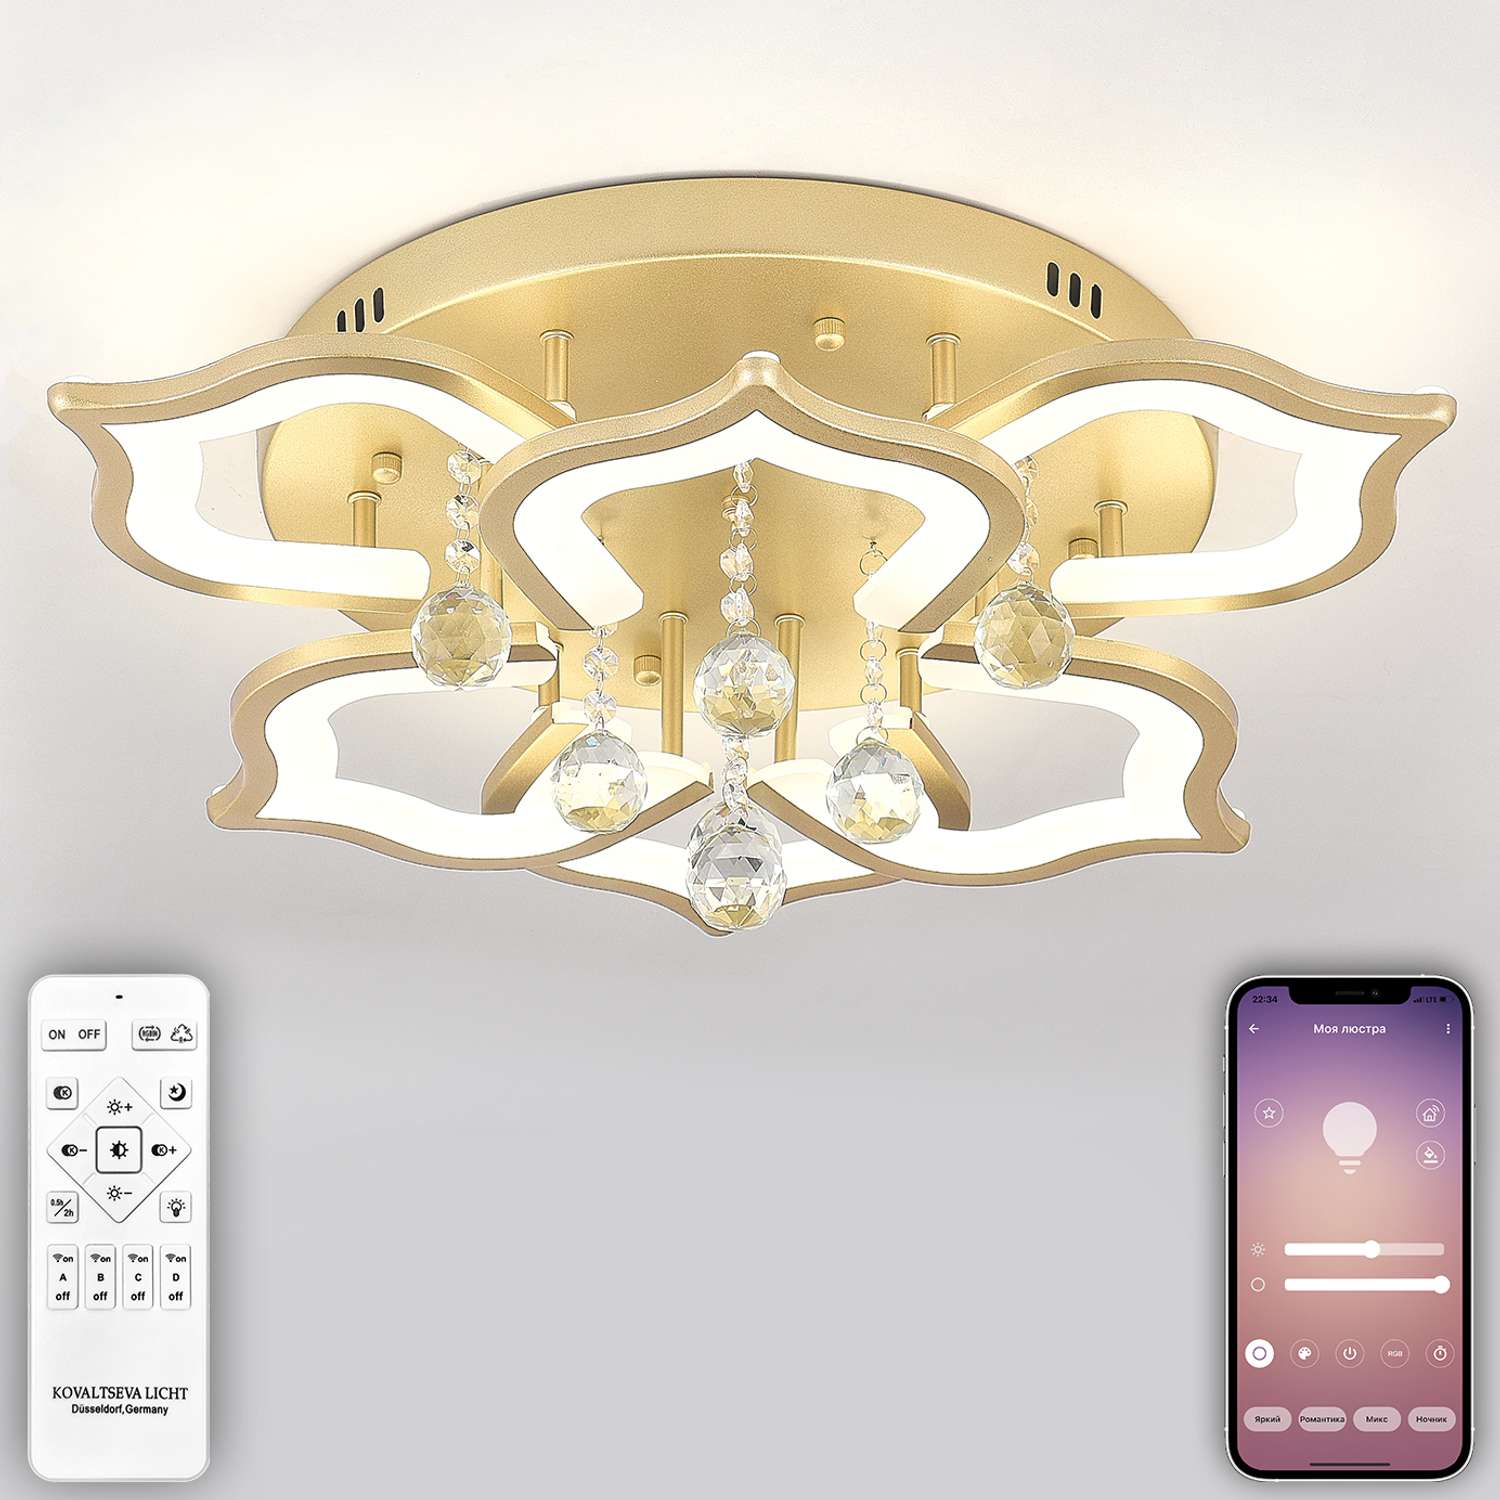 Светодиодный светильник NATALI KOVALTSEVA люстра 100W золотой LED - фото 1